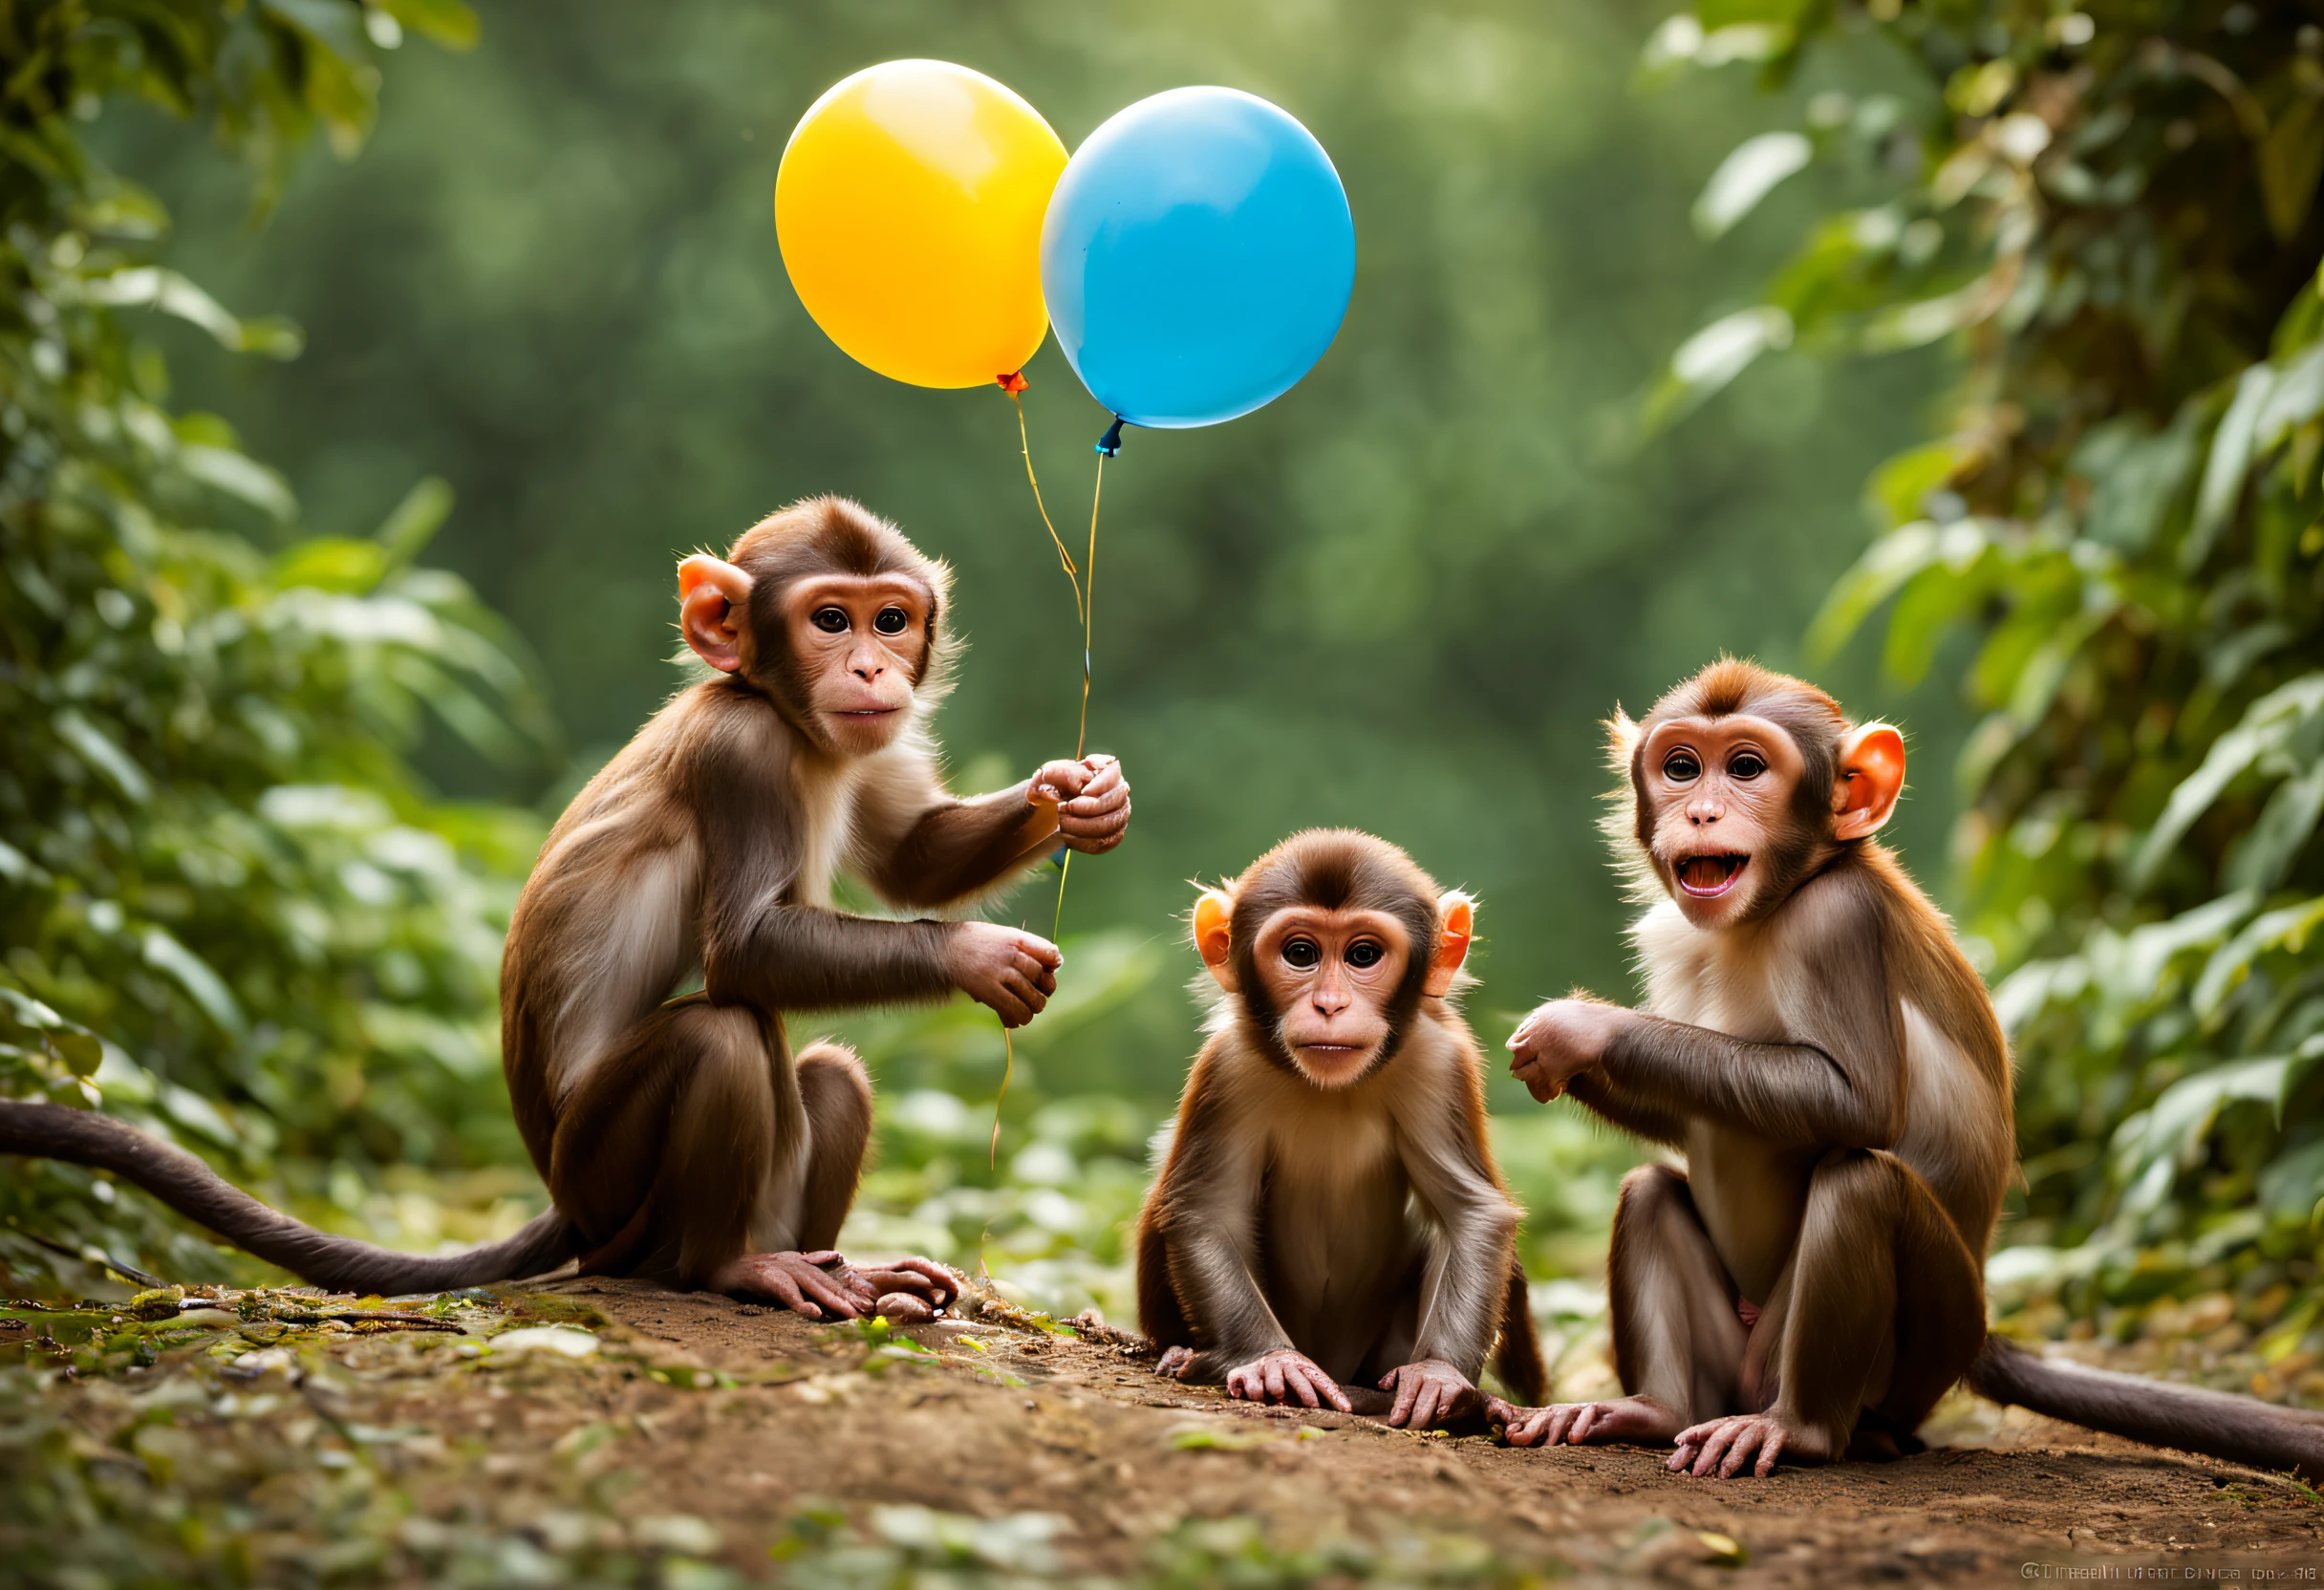 "(Лучшее качество,ультрадетализированный),группа обезьян, играющих с воздушными шарами,веселье,радость,любопытные обезьяны,энергичные обезьяны,игривые обезьянки,Лесной фон,разноцветные воздушные шары,веселая атмосфера,яркие цвета,выразительные лица,пушистый мех,озорные выражения,обезьяньи выходки,Счастливые моменты,естественная среда обитания обезьян,фотография дикой природы,Экшн-шоты,обезьянья семья,братья и сестры обезьяны,эмоции,интерактивная игра,возбуждение,поведение животных,восхитительная сцена,боке огни,Красивая природа,лиственные деревья,залитый солнцем лес,время игры,активное воображение,веселье-filled environment,Воодушевляющая атмосфера,движение,прыгающие обезьяны,лопание воздушных шаров,зло,бессмысленная работа,творческая игра,Невинность,laughter and радость"